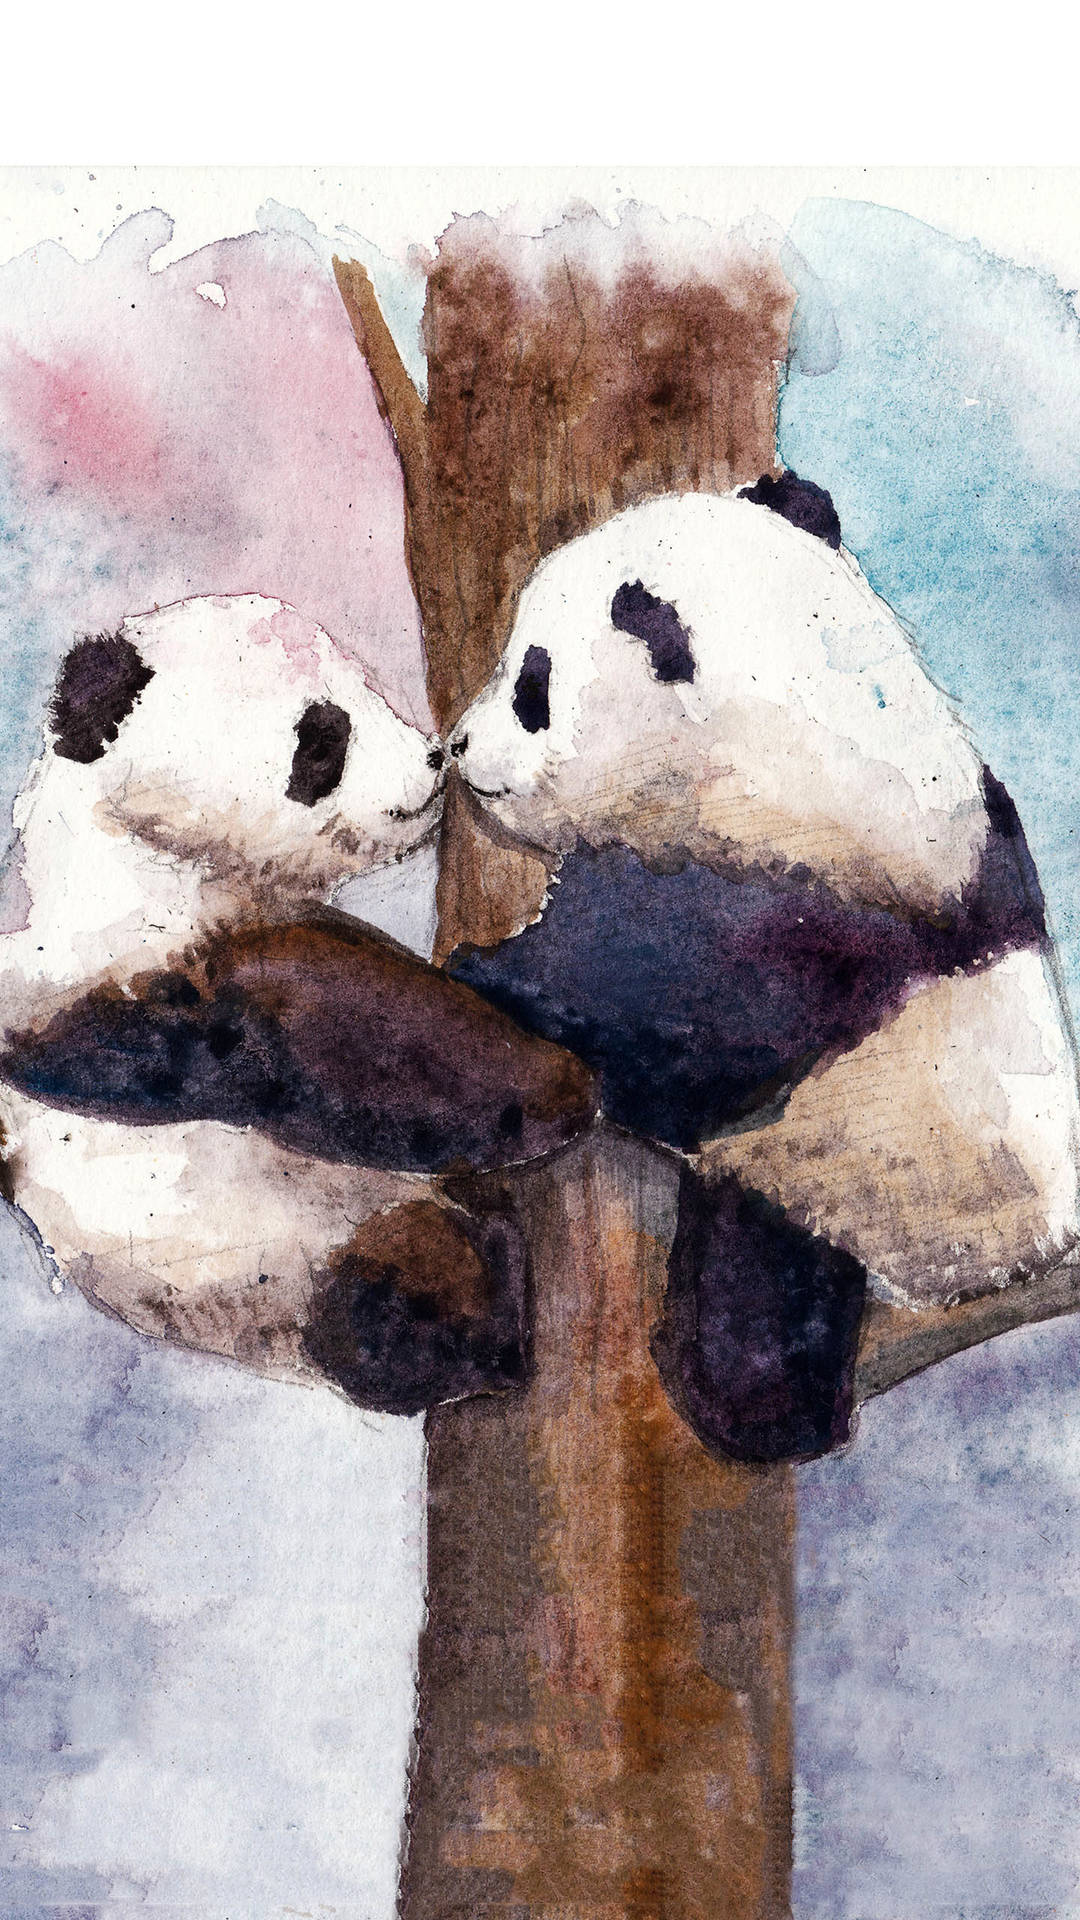 panda wallpaper iphone,panda,watercolor paint,bear,teddy bear,illustration